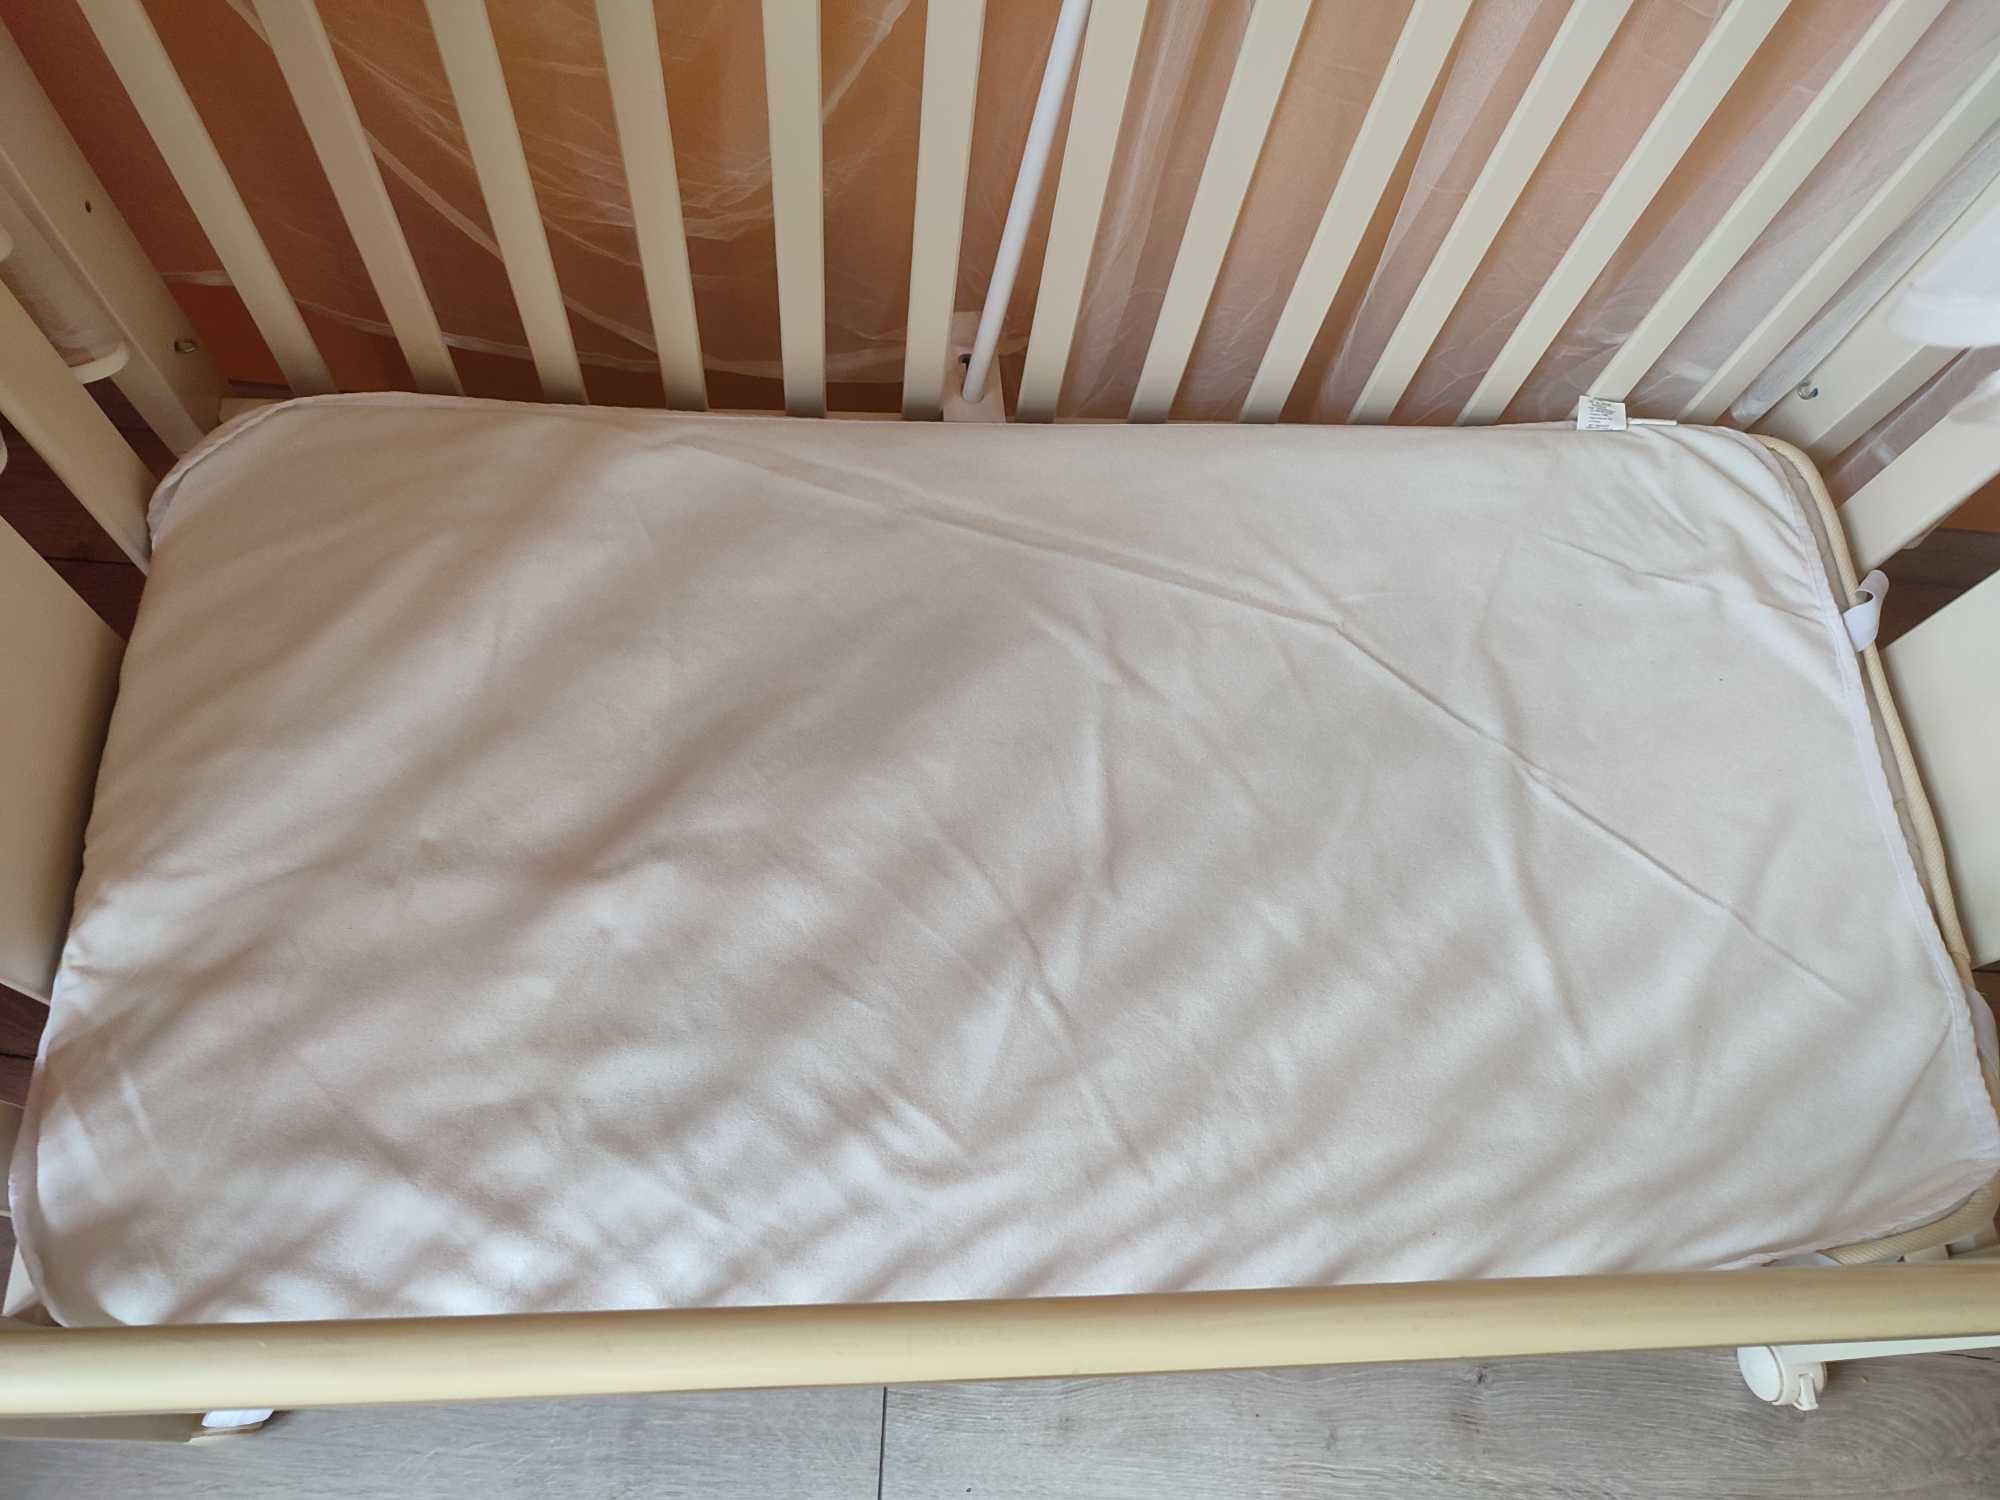 Кроватка Trama Luna,Португалия+матрац+балдахин+бампер+постельное и т.д